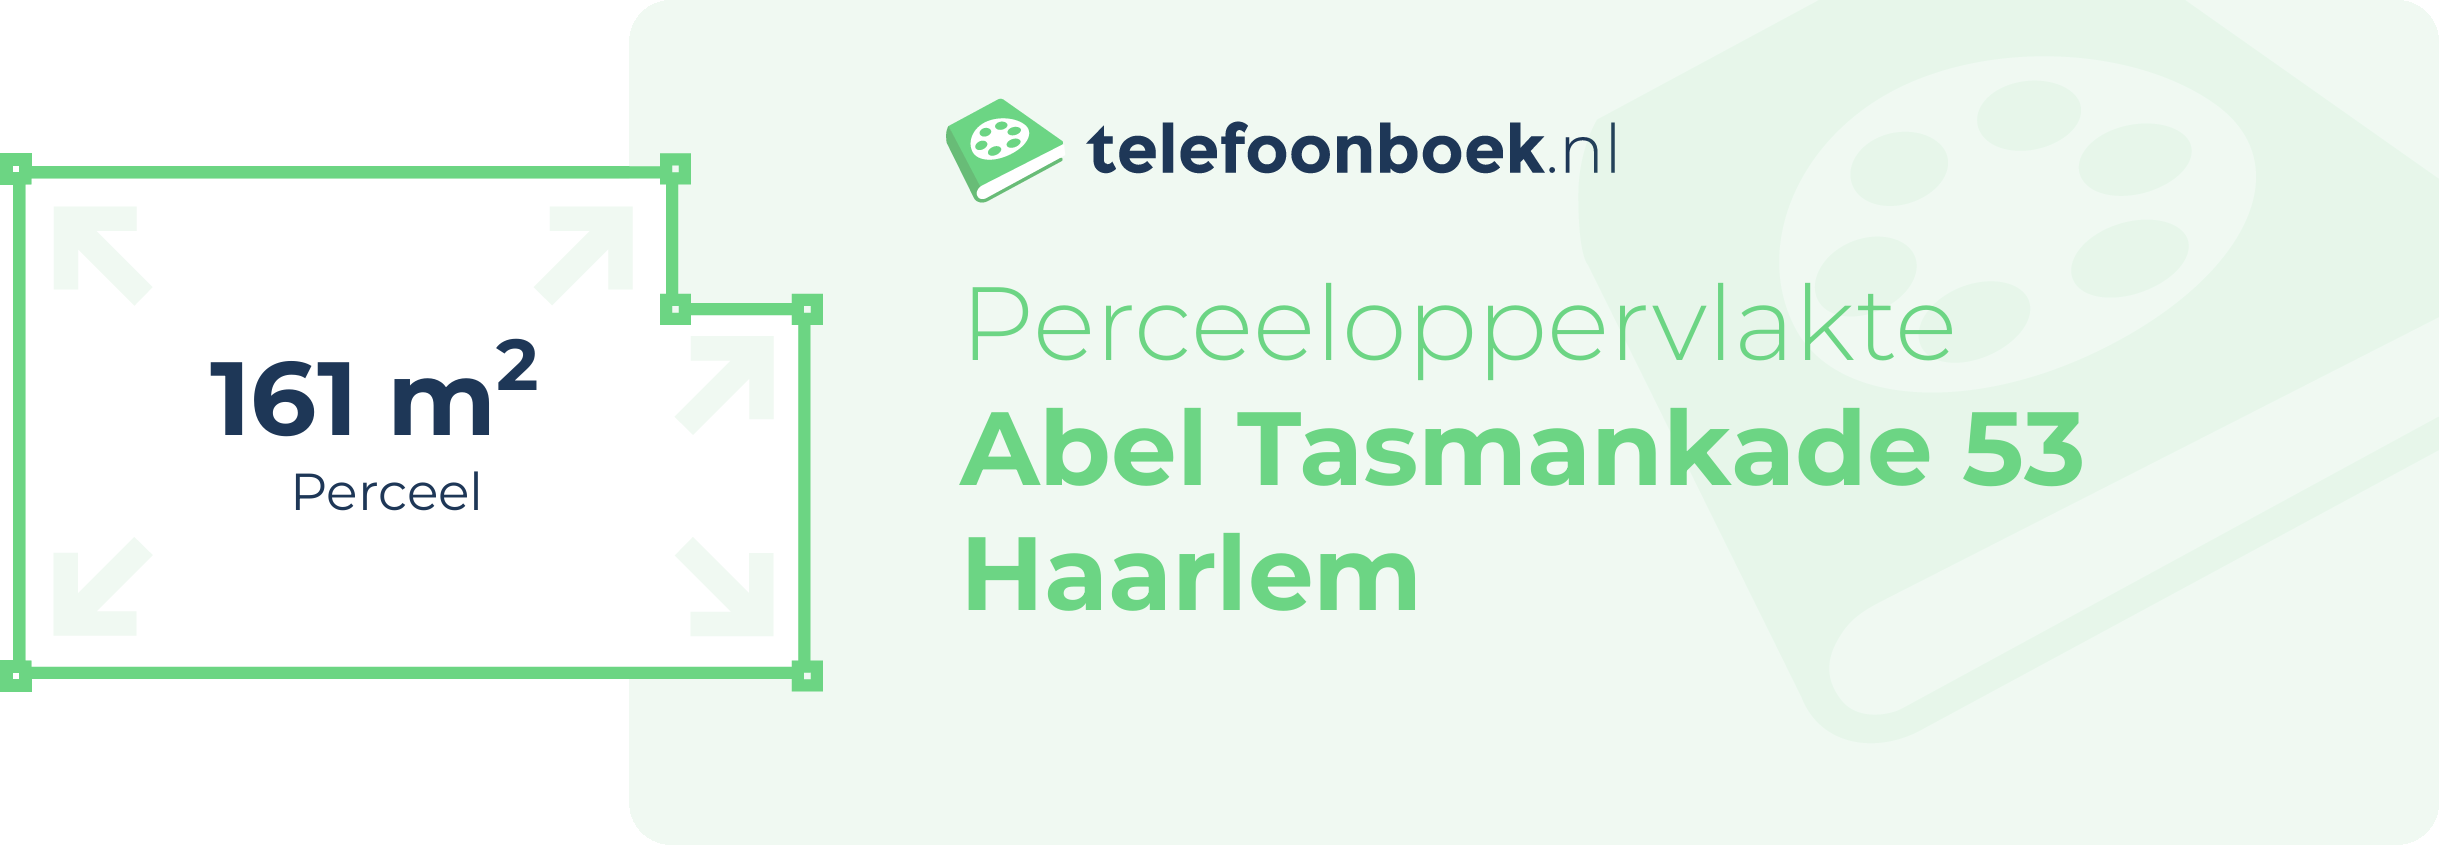 Perceeloppervlakte Abel Tasmankade 53 Haarlem